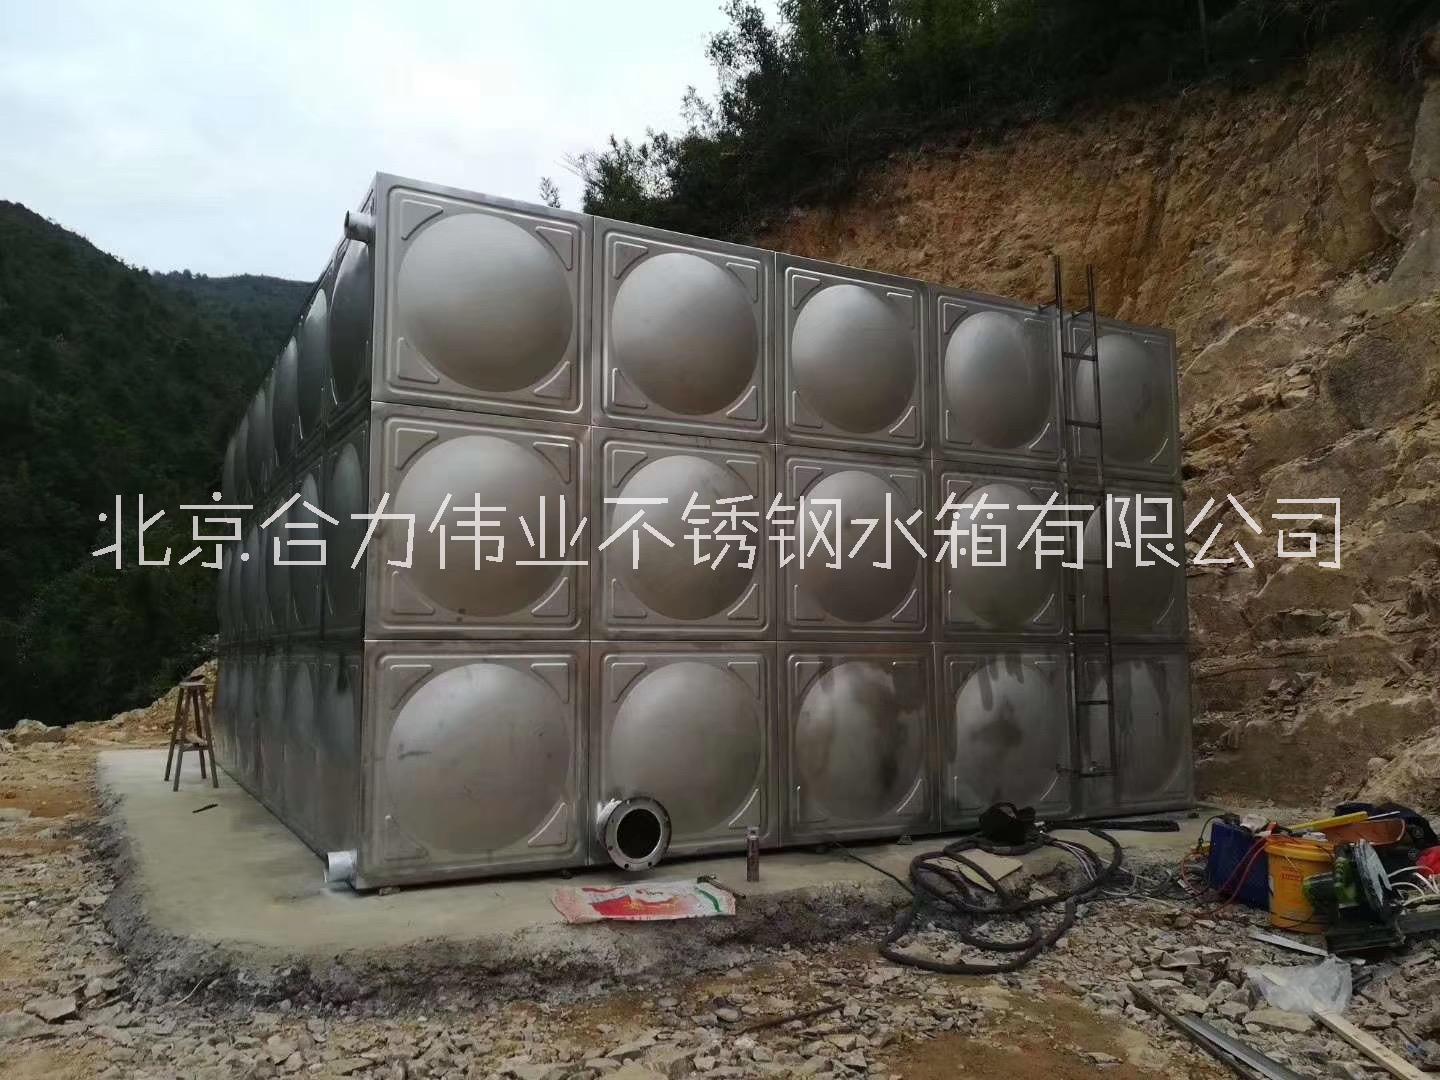 北京不锈钢水箱哪家好 合力伟业专业生产不锈钢水箱 用于储水 消防水 净化水 二次用水 水处理